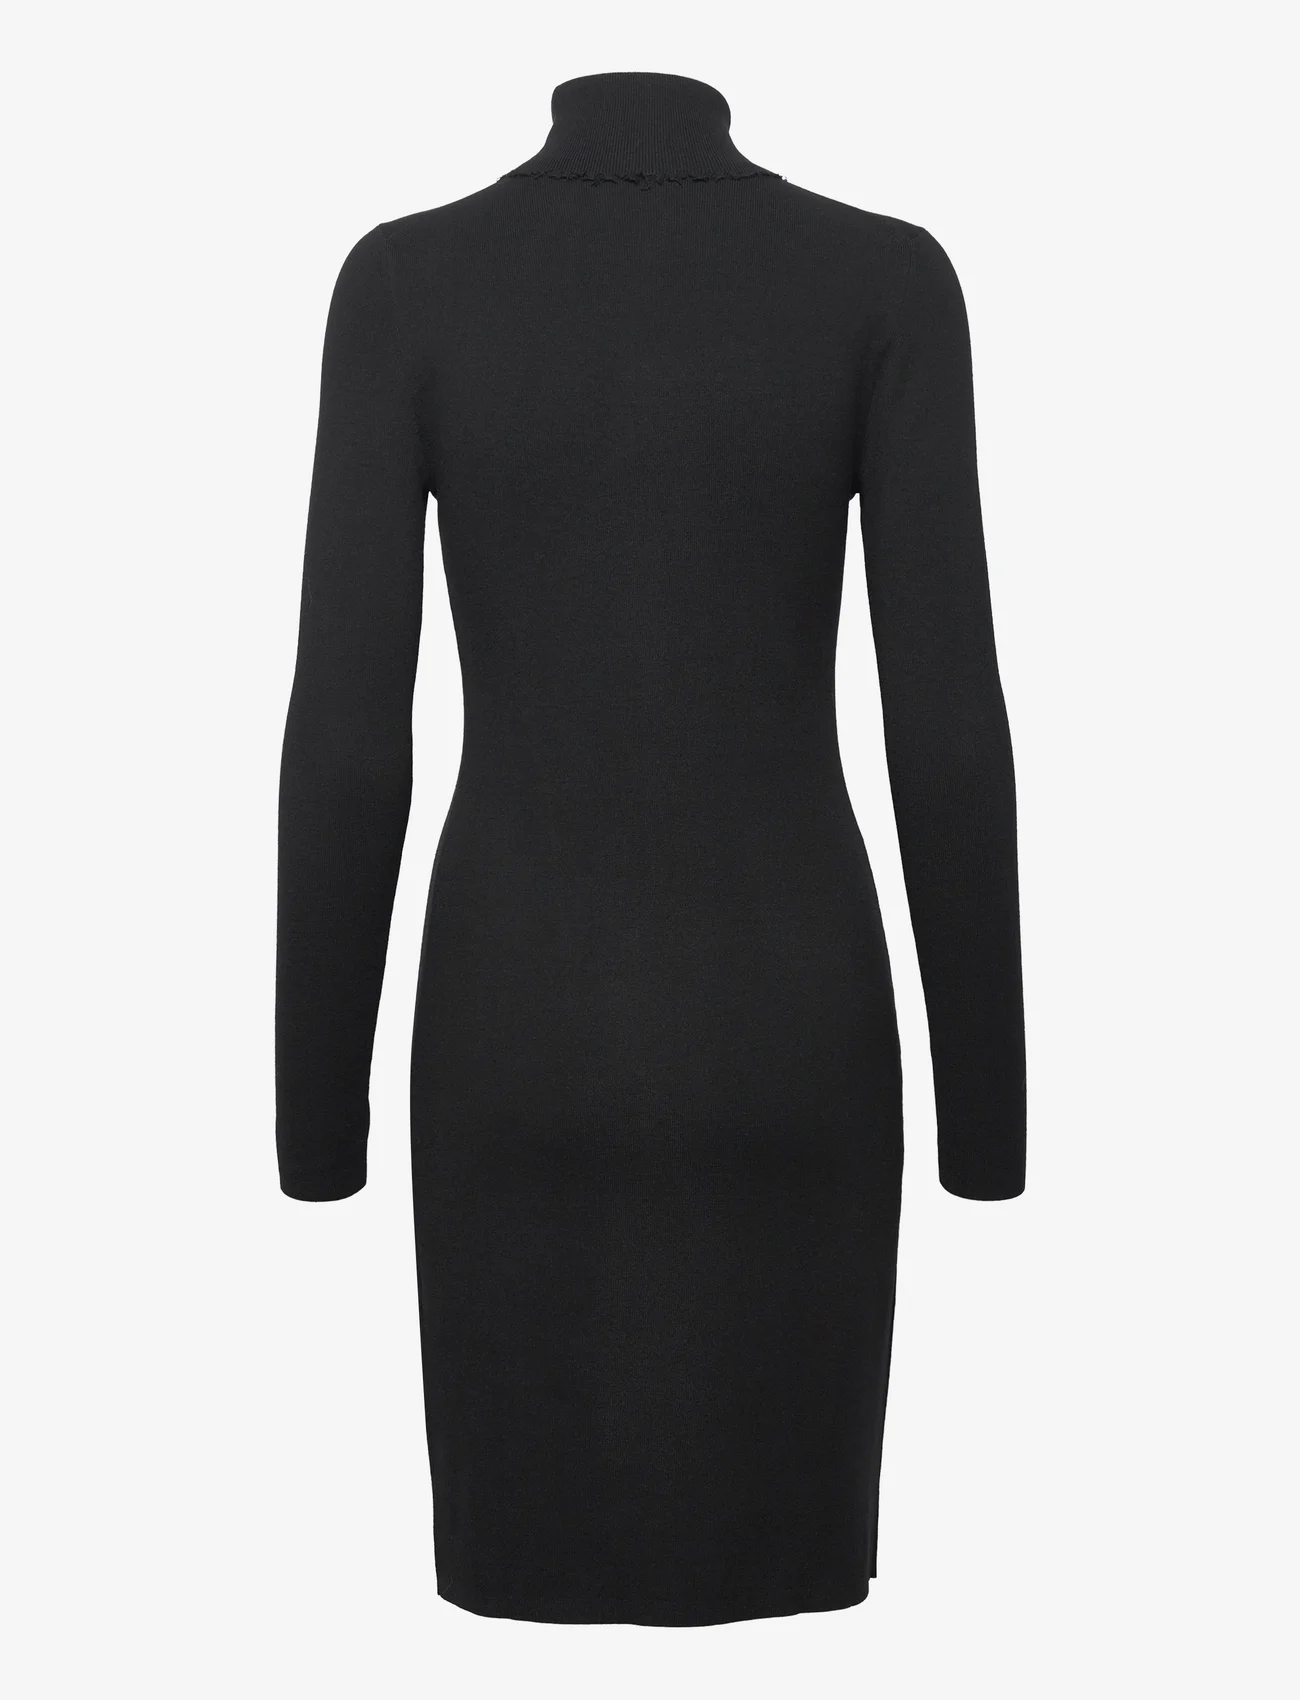 Filippa K - Monica Dress - fodralklänningar - black - 1